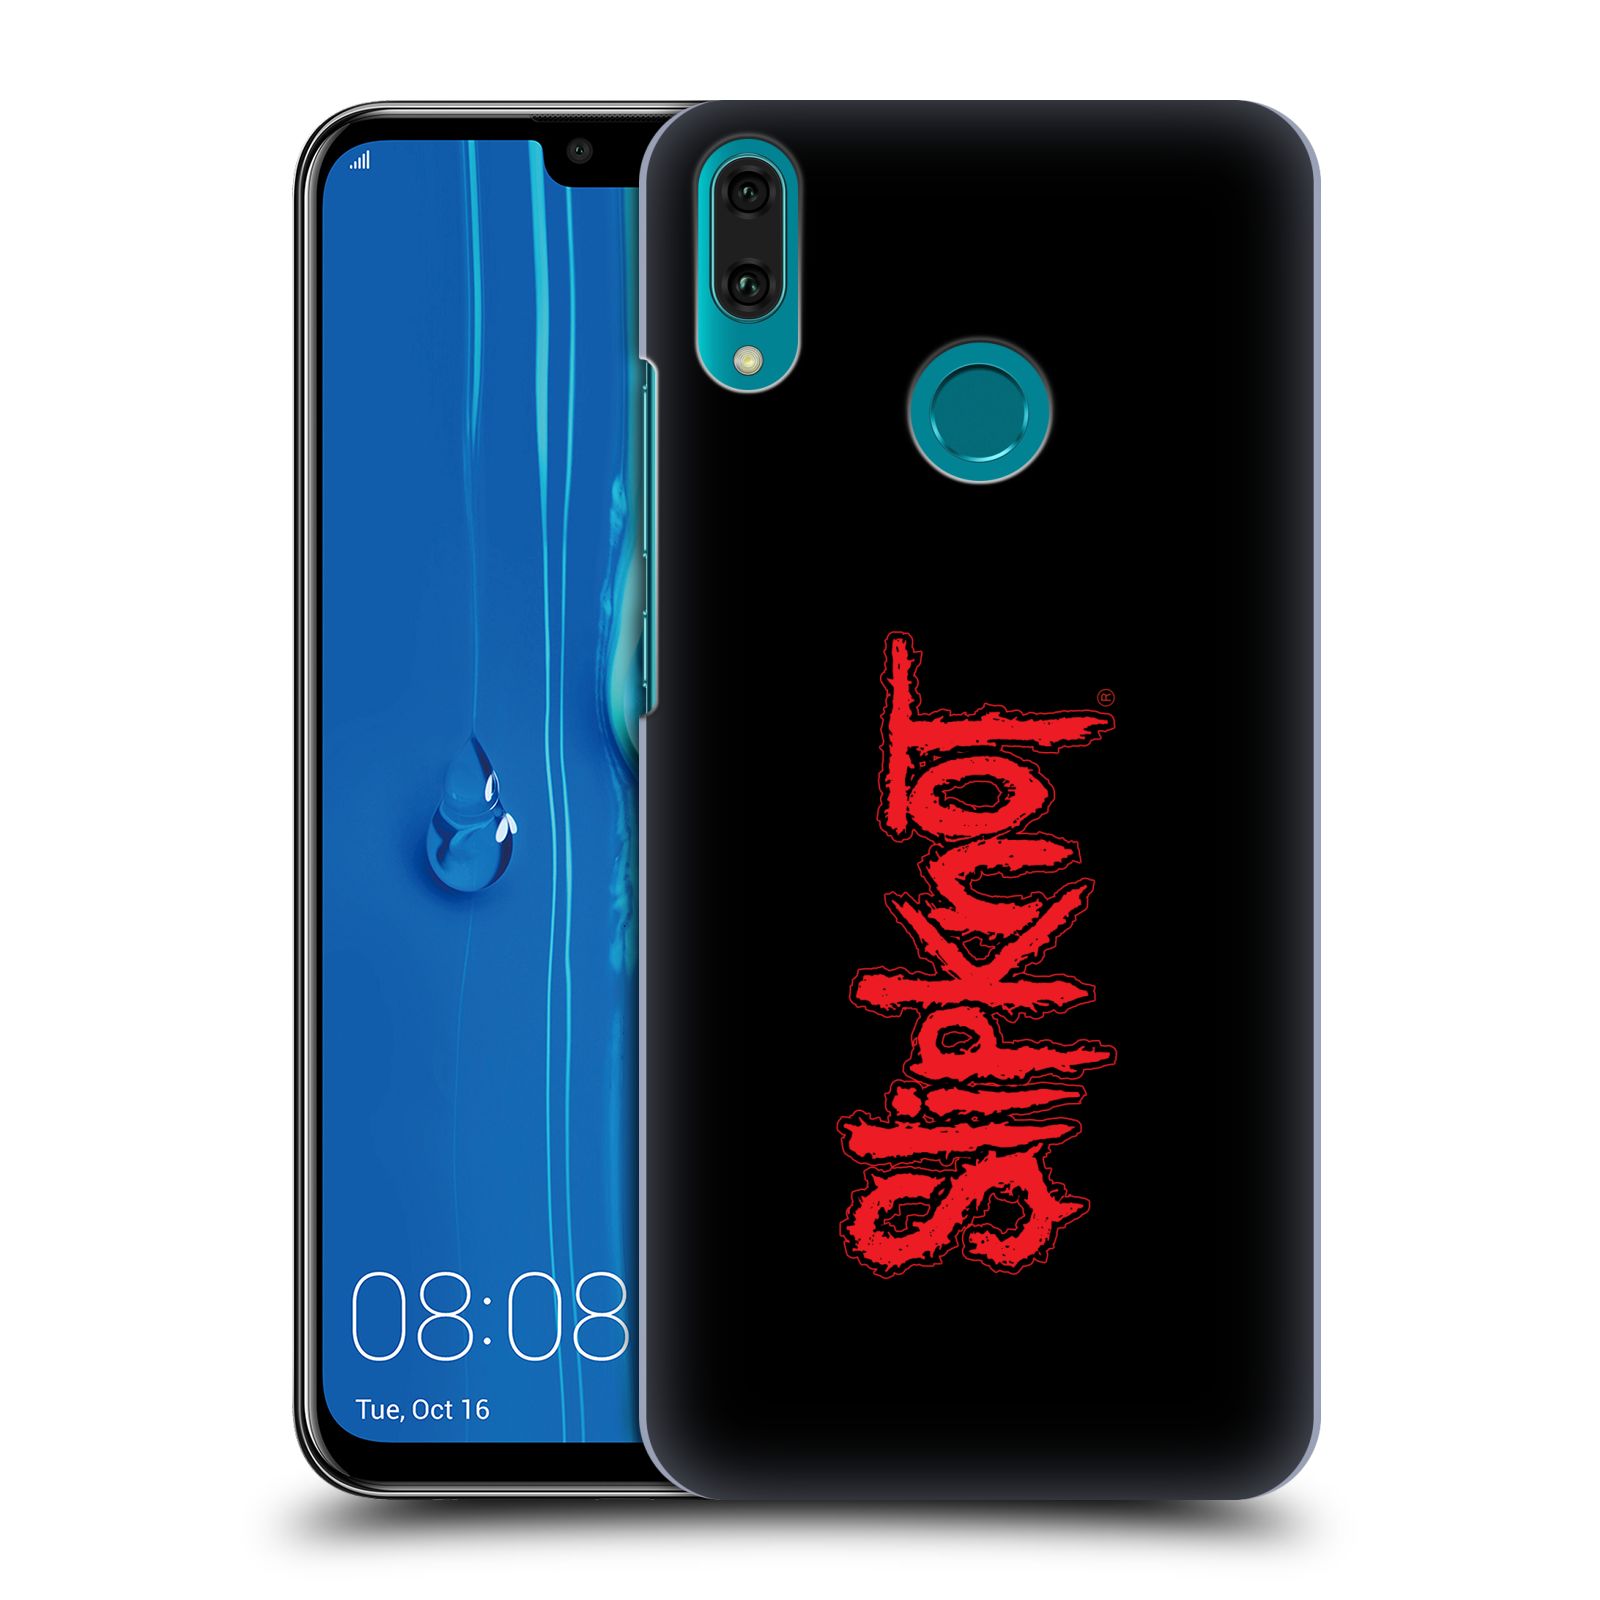 Pouzdro na mobil Huawei Y9 2019 - HEAD CASE - hudební skupina Slipknot logo velké